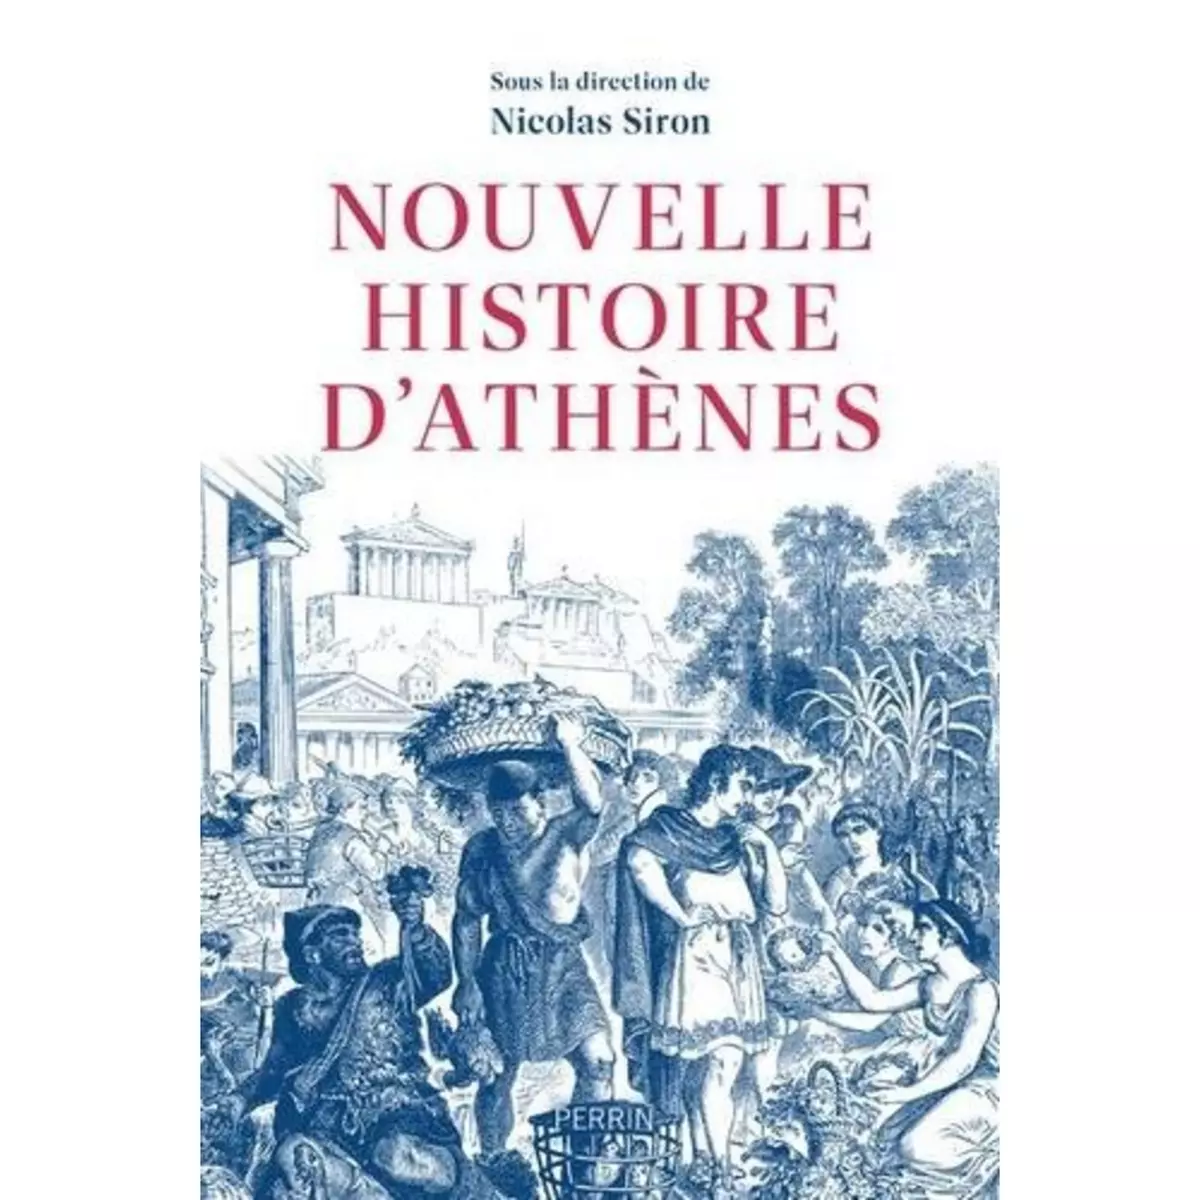  NOUVELLE HISTOIRE D'ATHENES. LA CITE VUE DE L'AGORA, VE-IVE SIECLE AV. J.-C., Siron Nicolas